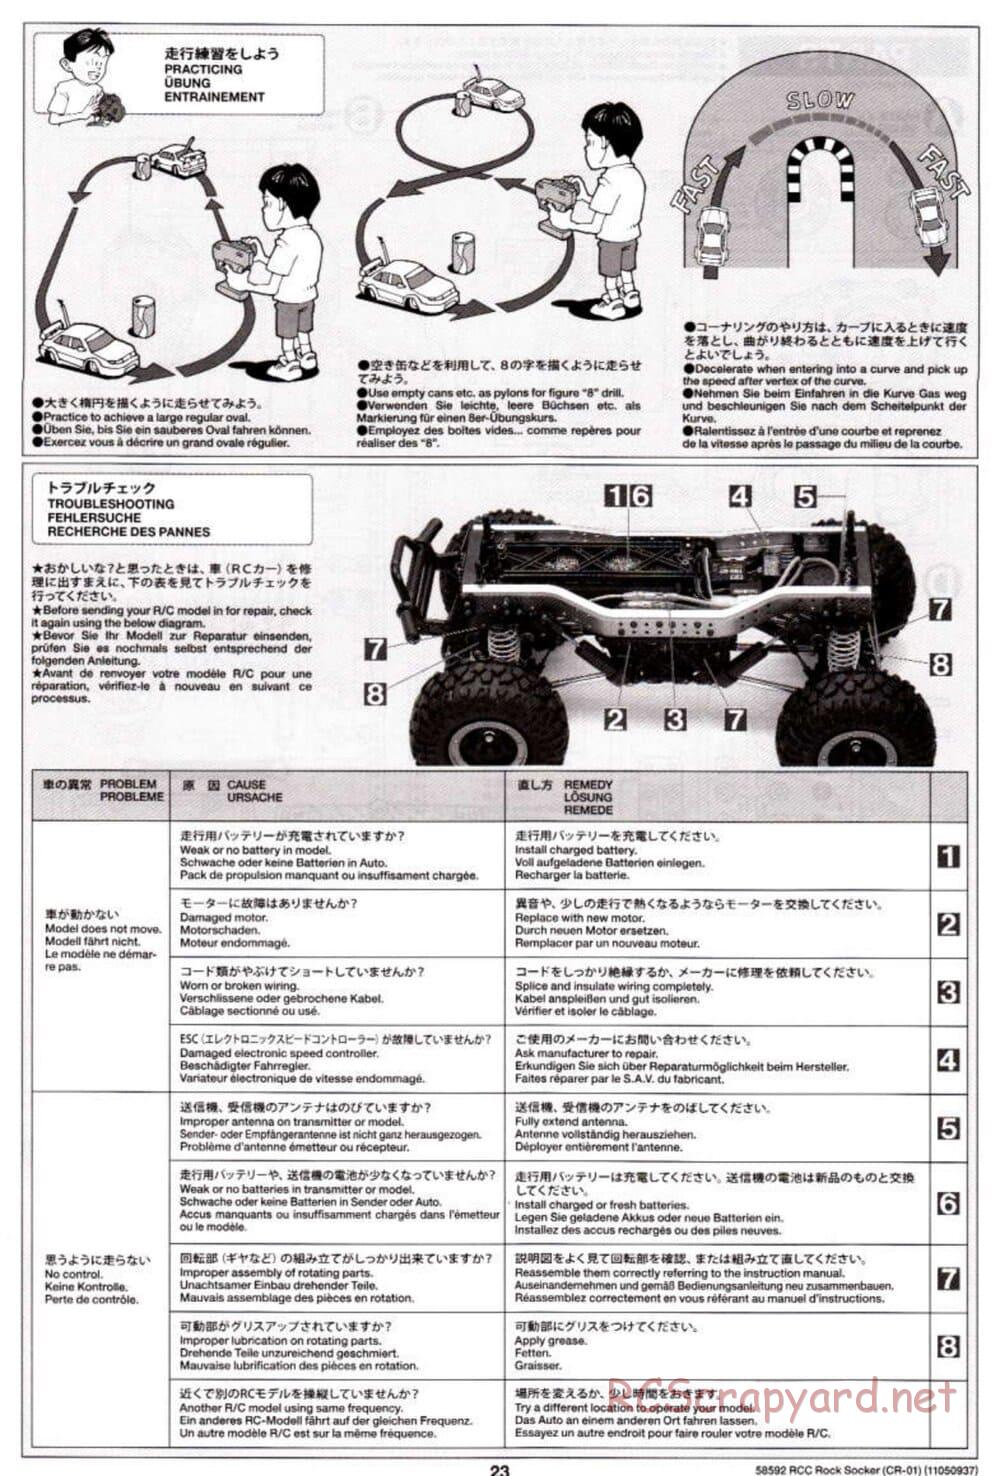 Tamiya - Rock Socker - CR-01 Chassis - Manual - Page 23